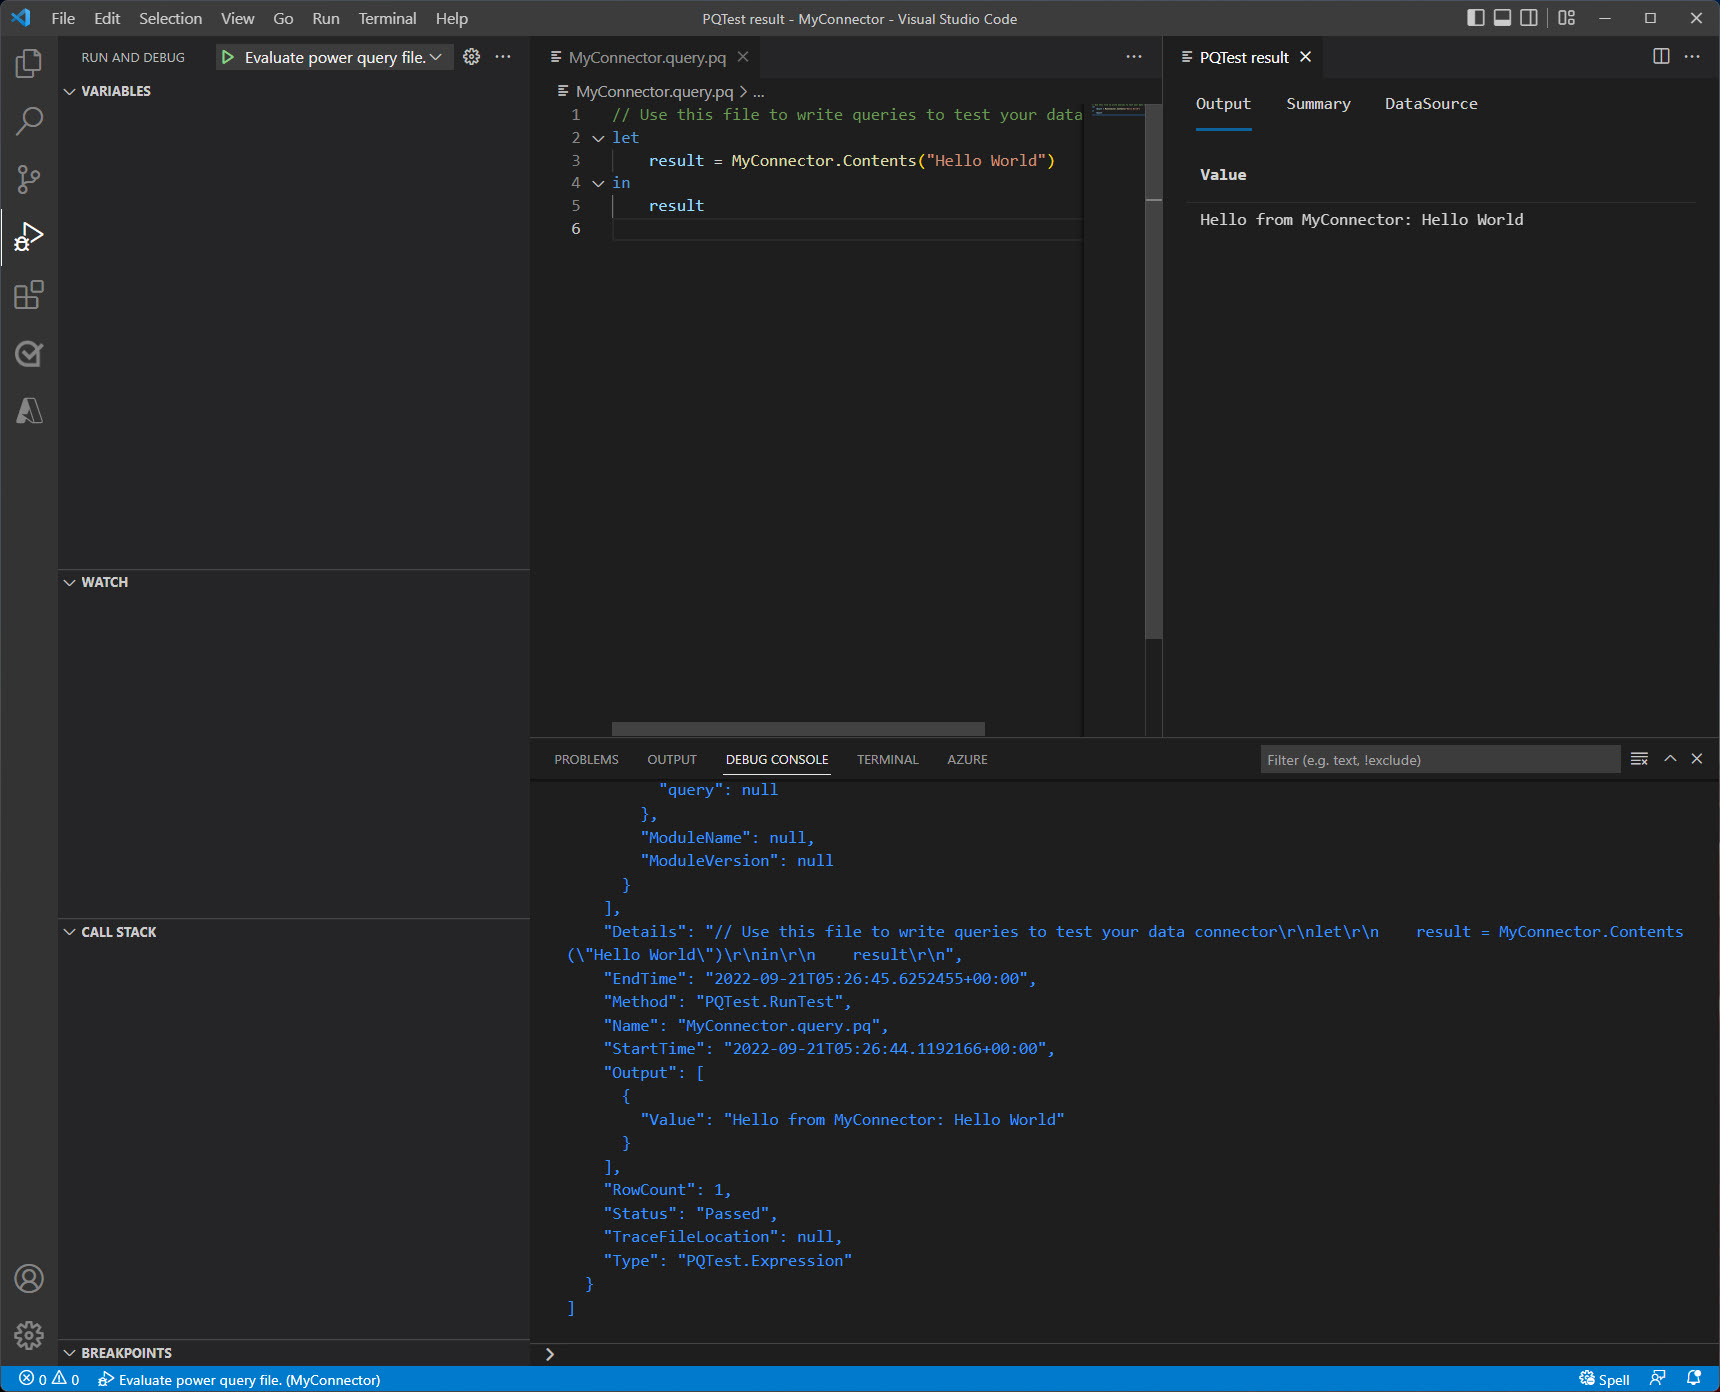 Окно Visual Studio Code после завершения оценки показывает выходные данные в консоли и панели результатов.